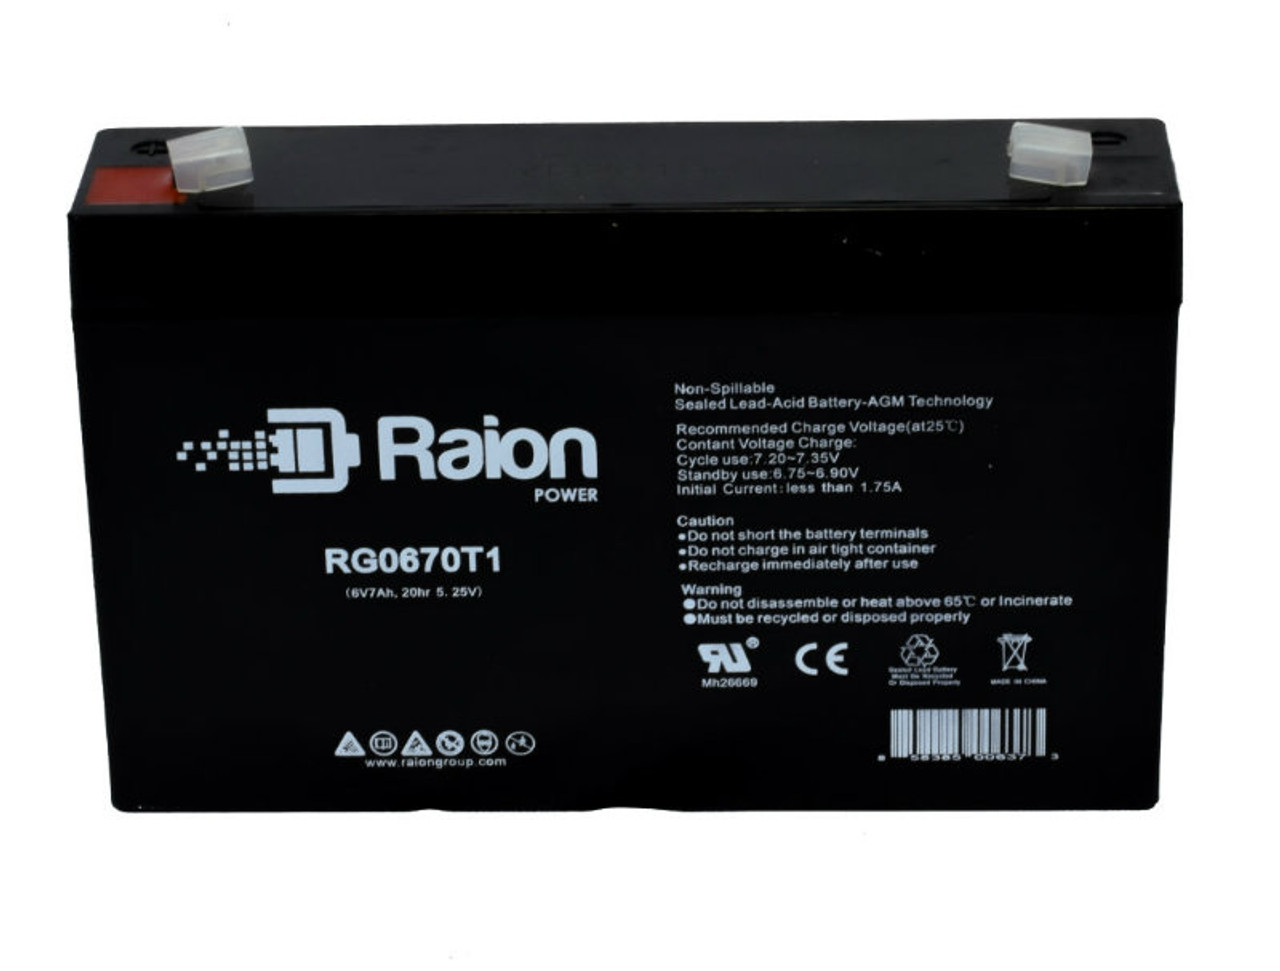 Raion Power RG0670T1 SLA Battery for VCELL 6VC7.2 OEM Battery